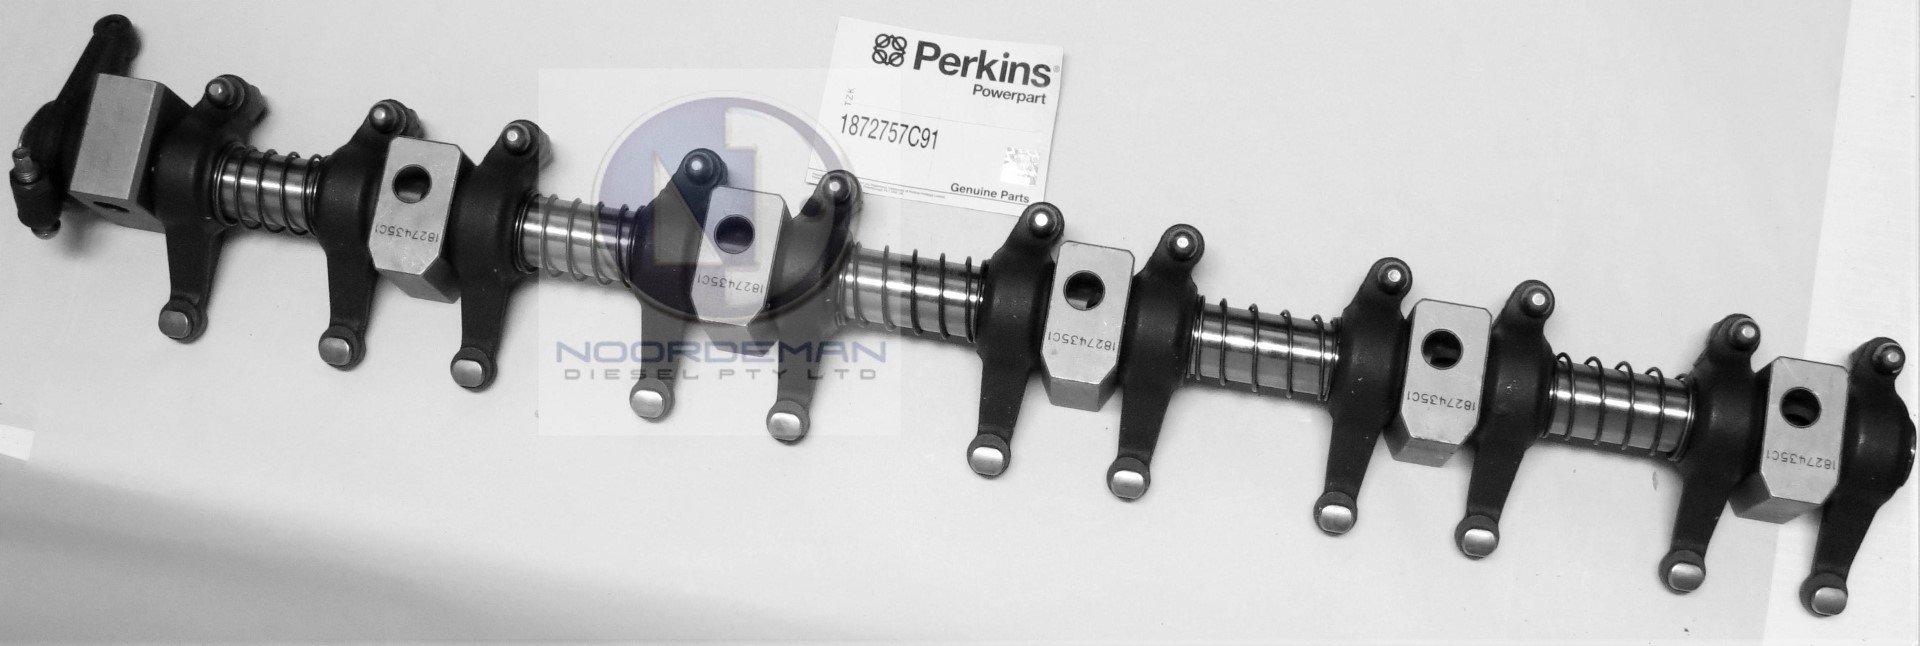 1872757C91 Perkins Rocker Shaft 1300 Series